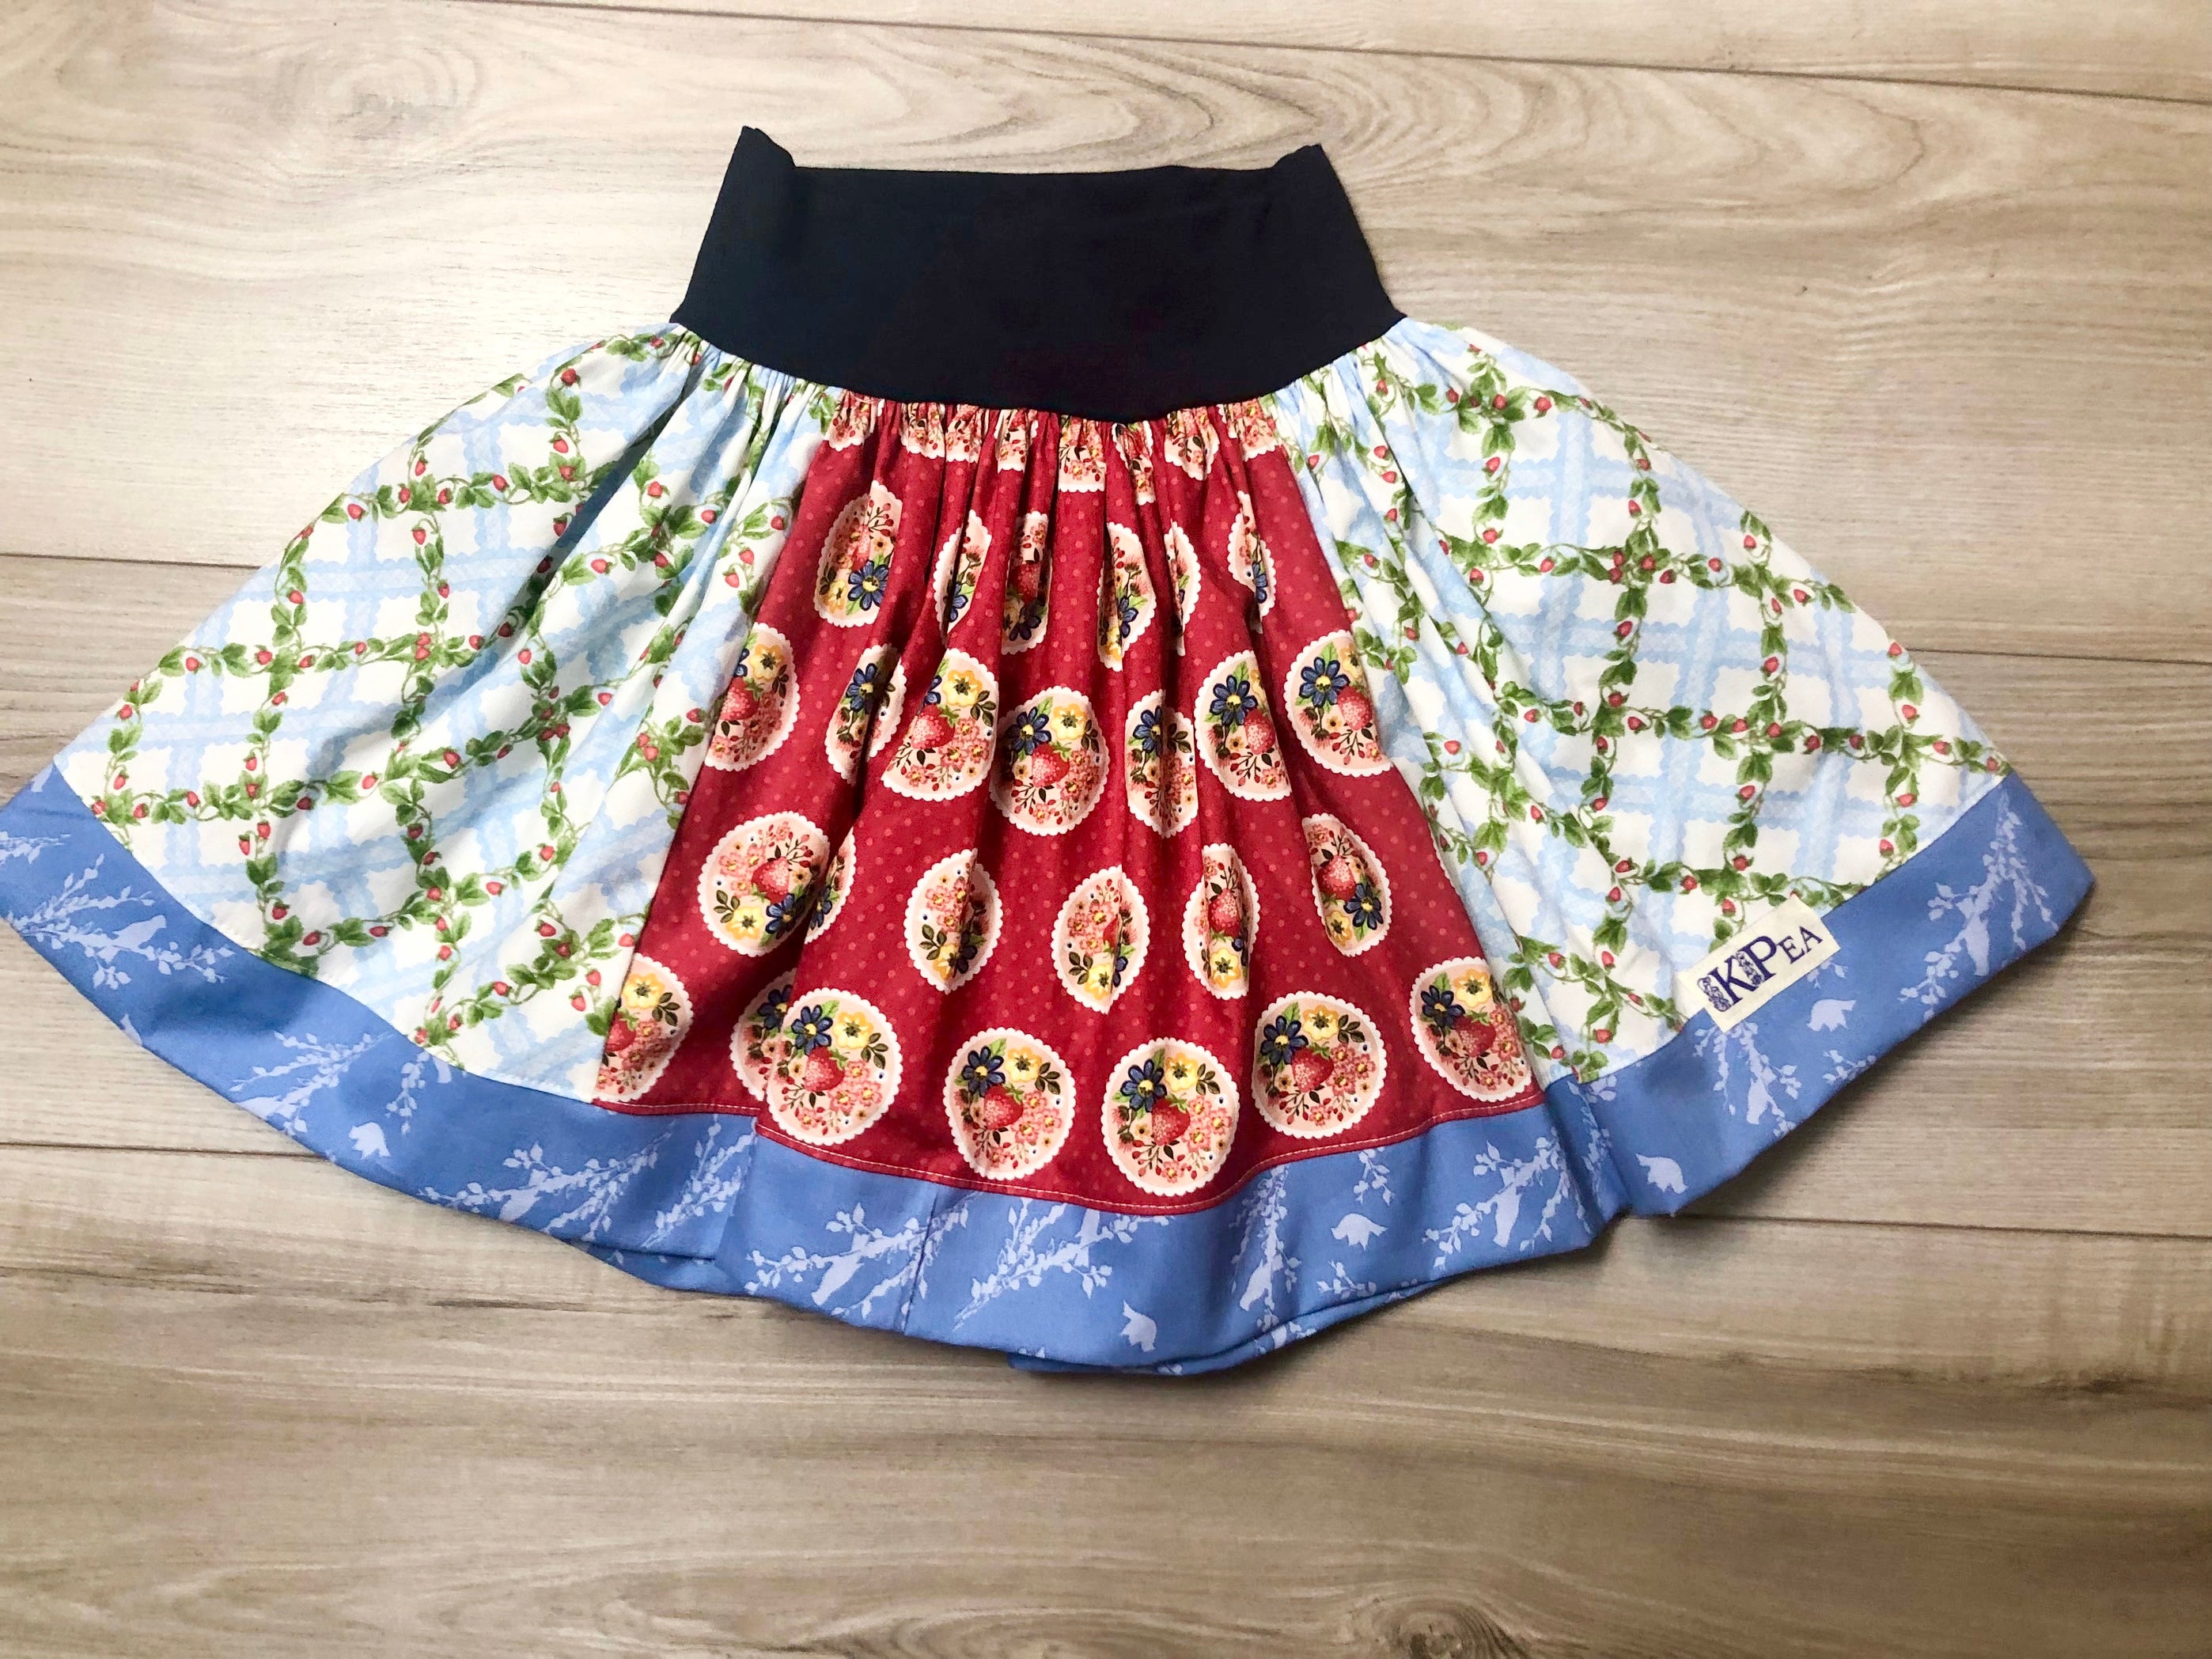 Strawberry Fields Lulu Skirt (ships in 2 weeks)